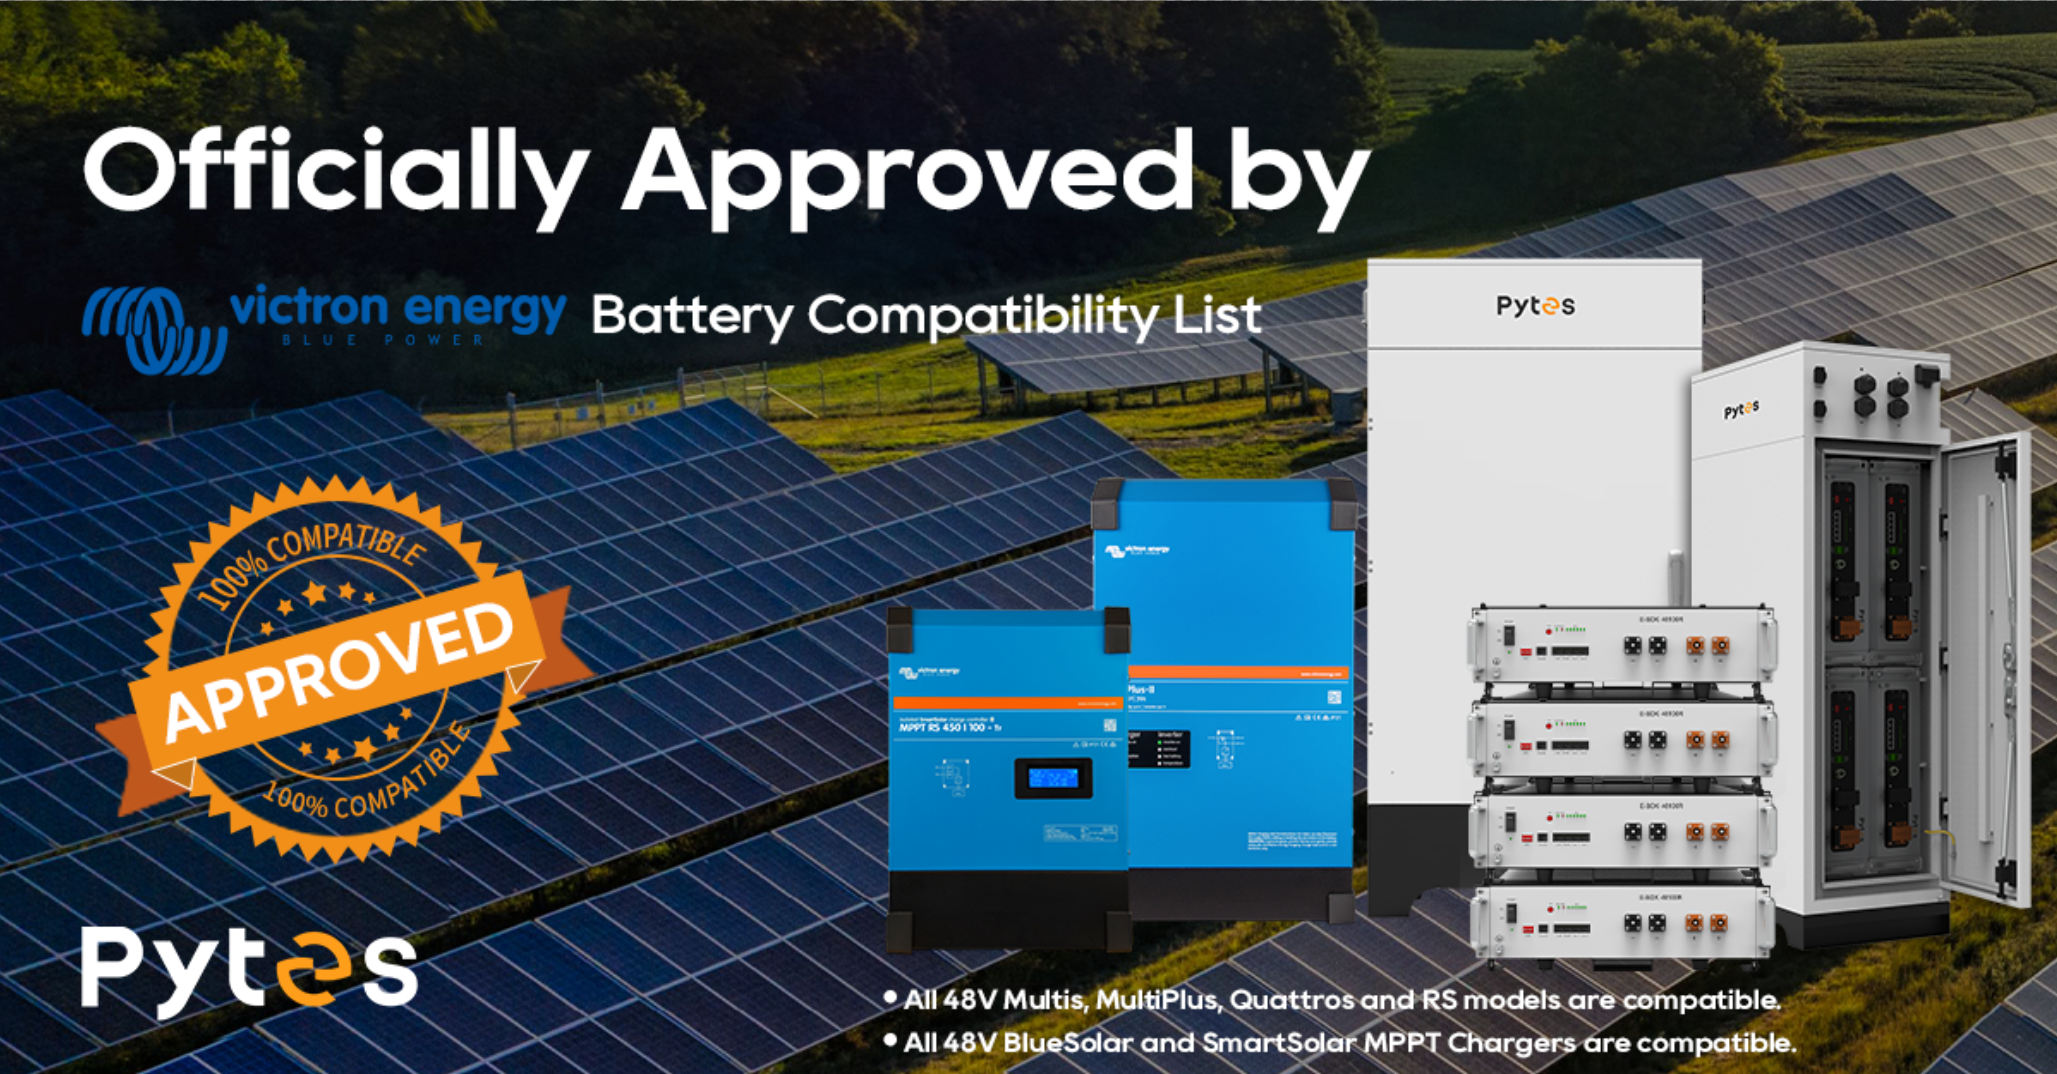 Pytes ahora está oficialmente en la Lista de compatibilidad de la batería de energía Victron.